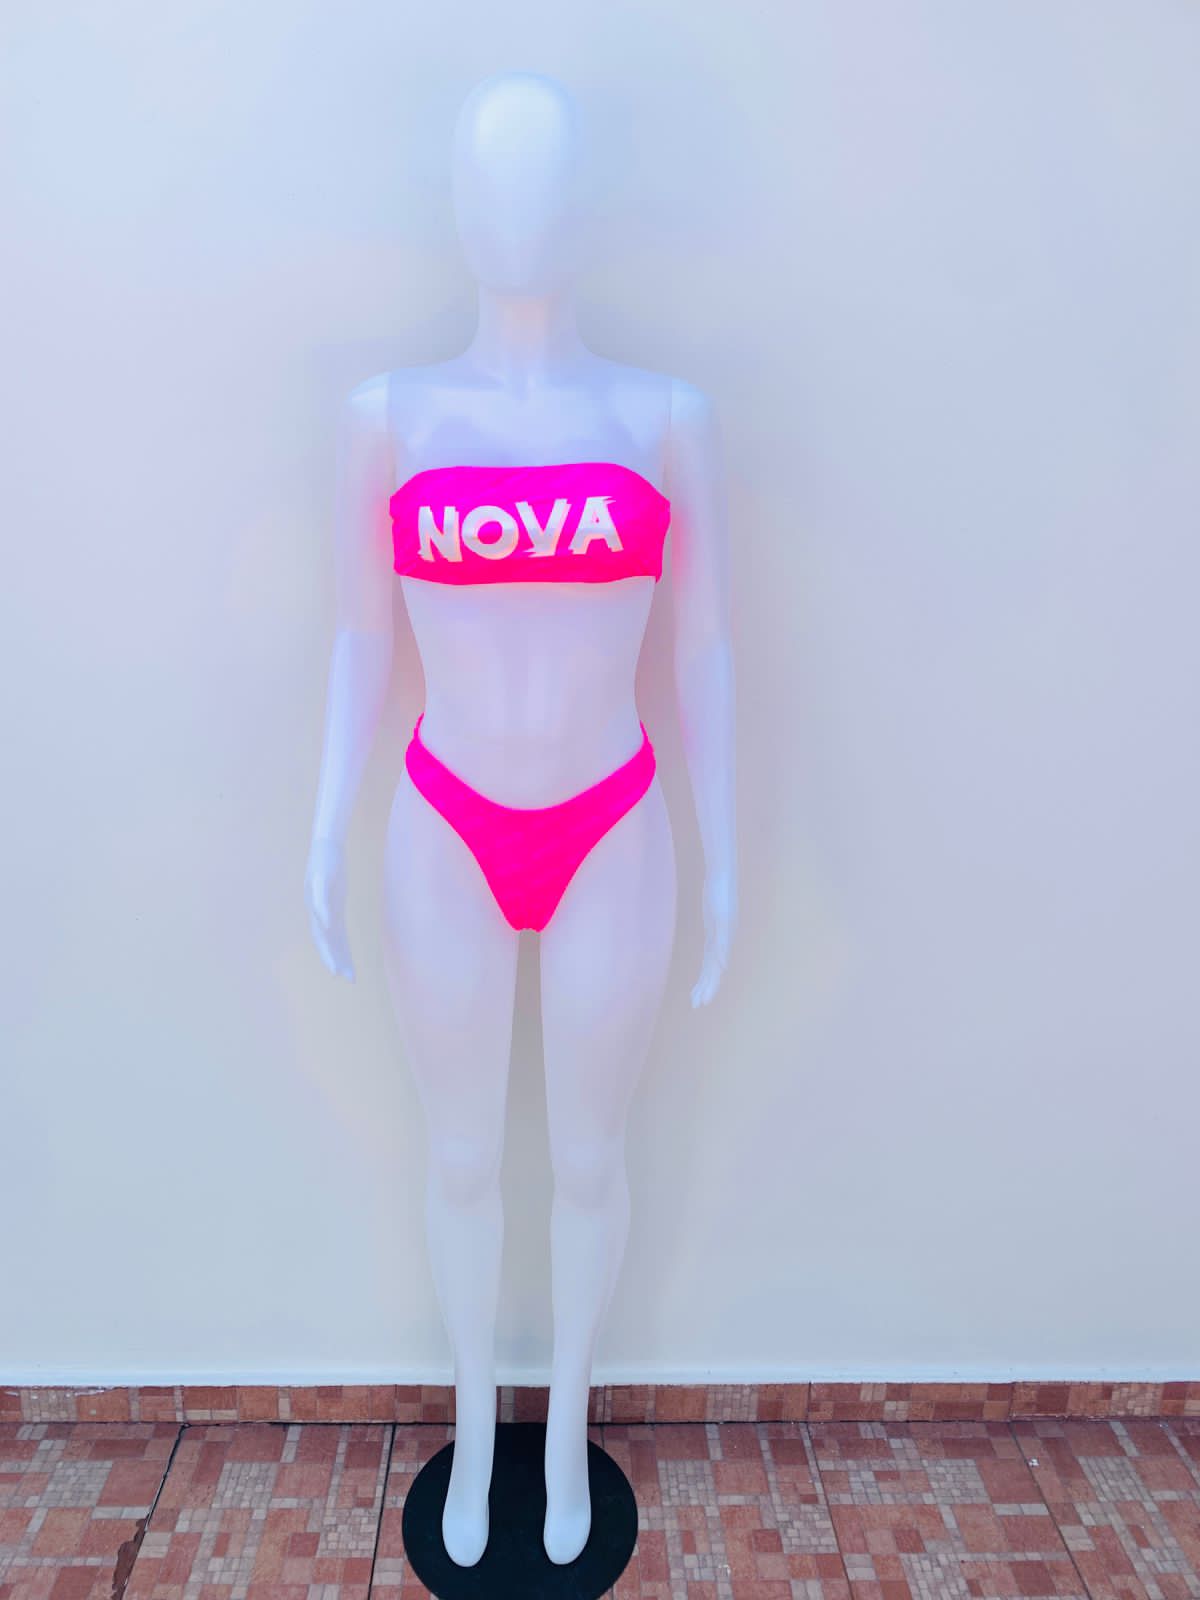 Biquini Fashion Nova original, rosado Fuscia estraple top con letras NOVA en color blanco en el centro, panti con letras NOVA poco visible.